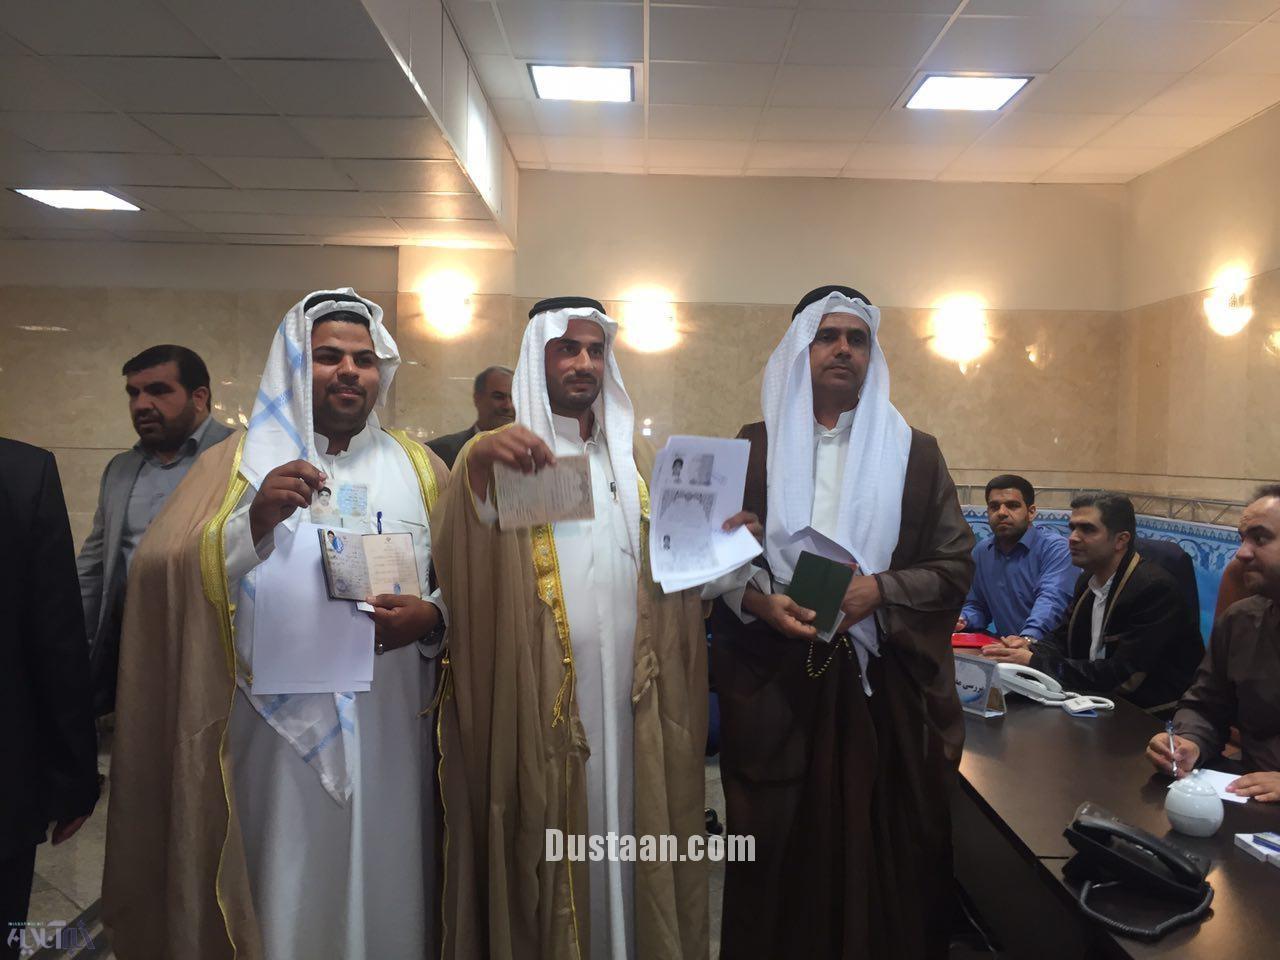 ثبت نام سه مرد عرب در انتخابات/عکس